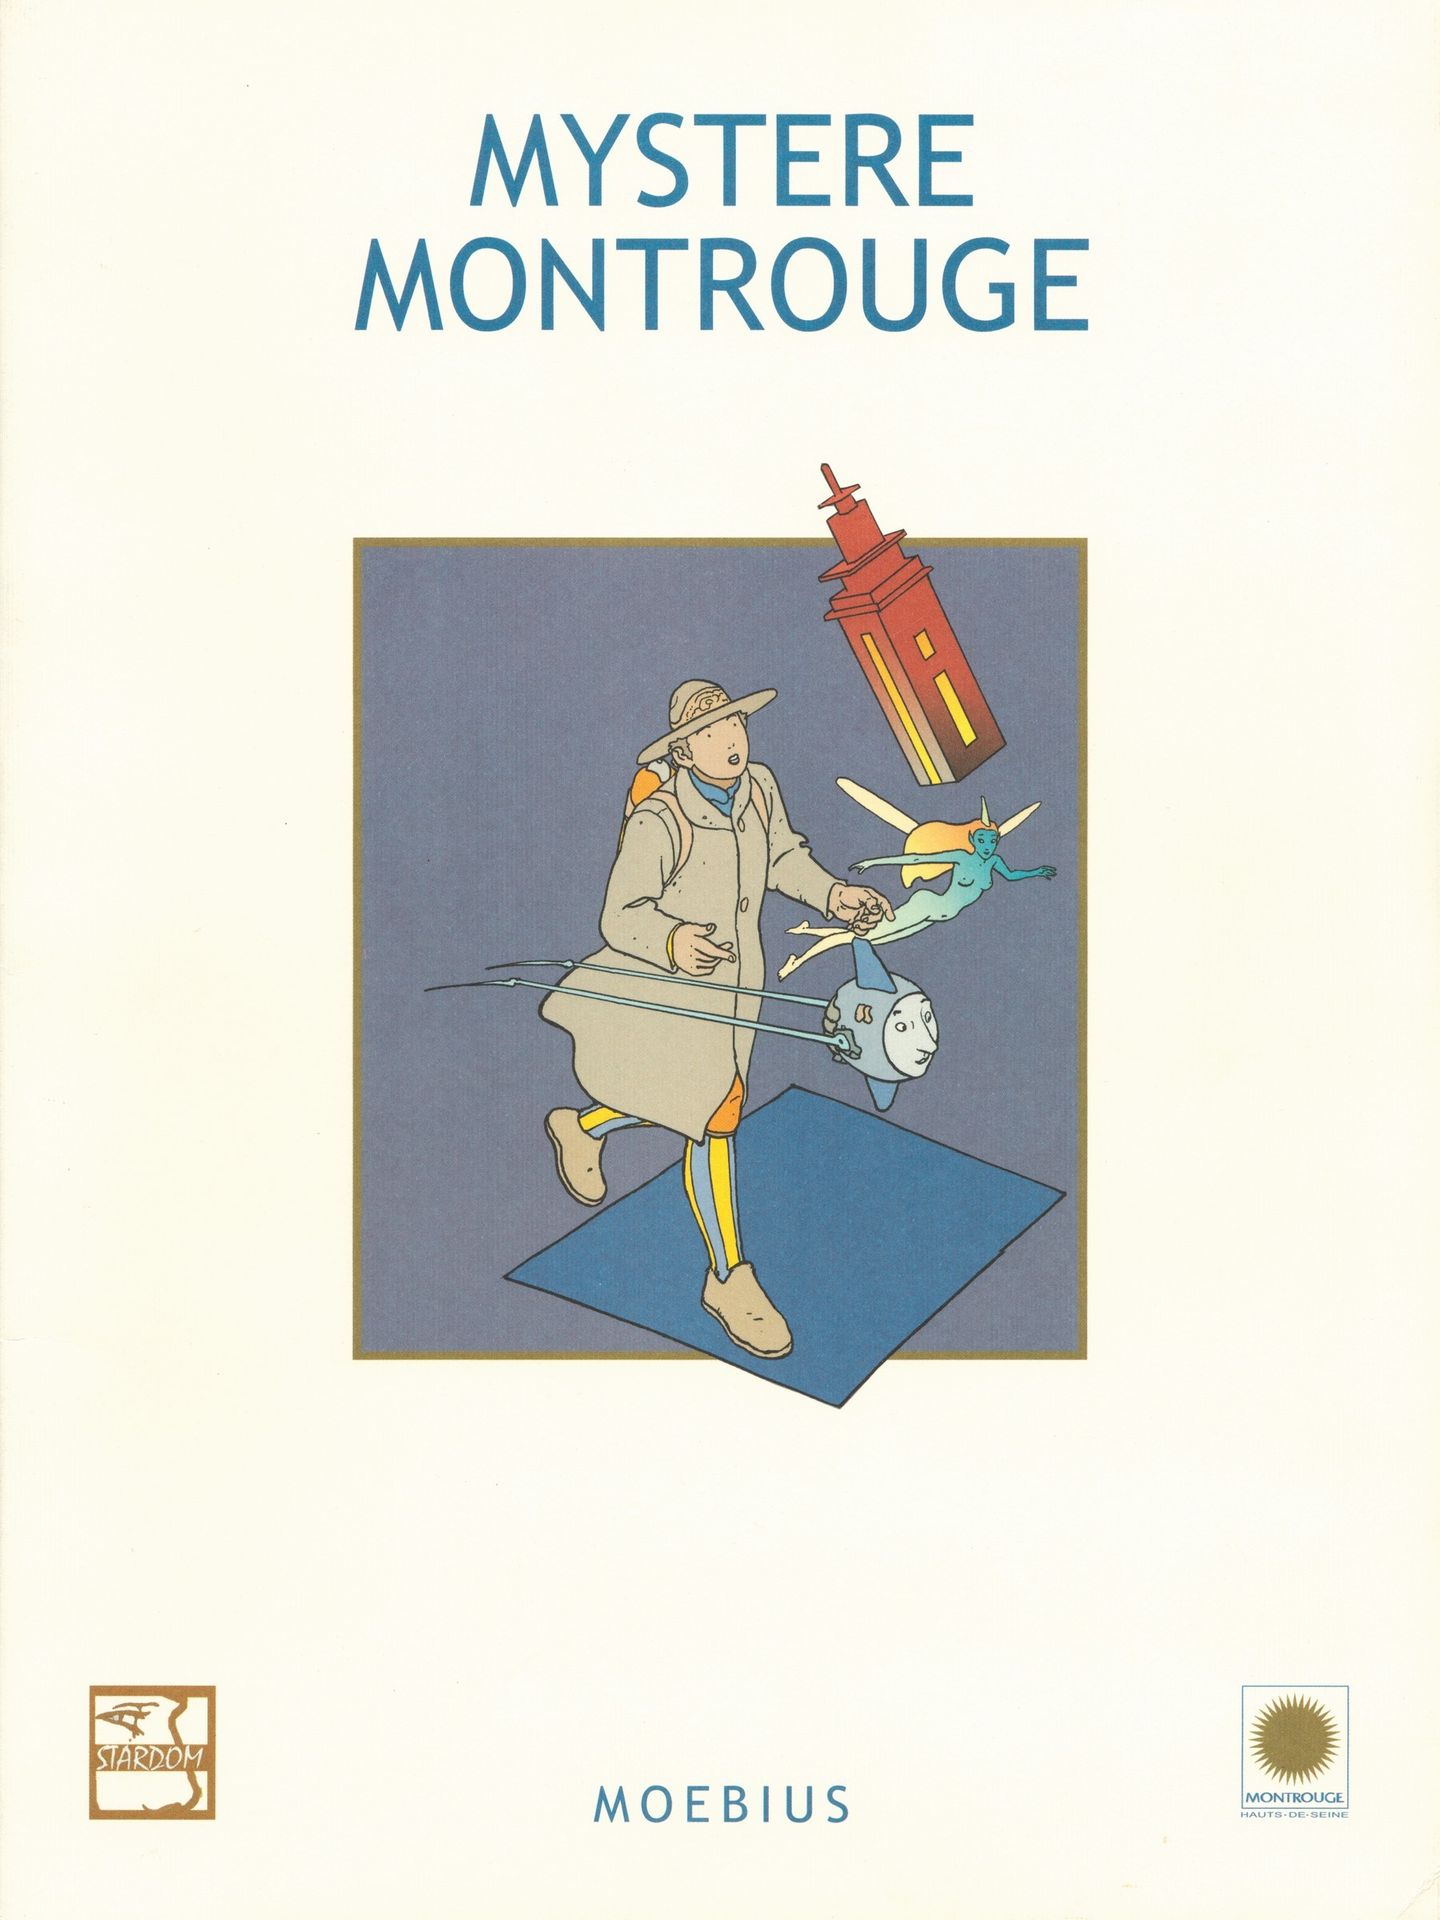 MOEBIUS 莫比乌斯。神秘的蒙特鲁格组合。为2001年的展览制作的1000份版本。 包含11幅彩色插图和一个辅助板，装在一个翻盖文件夹中。略有折痕。 星光大&hellip;